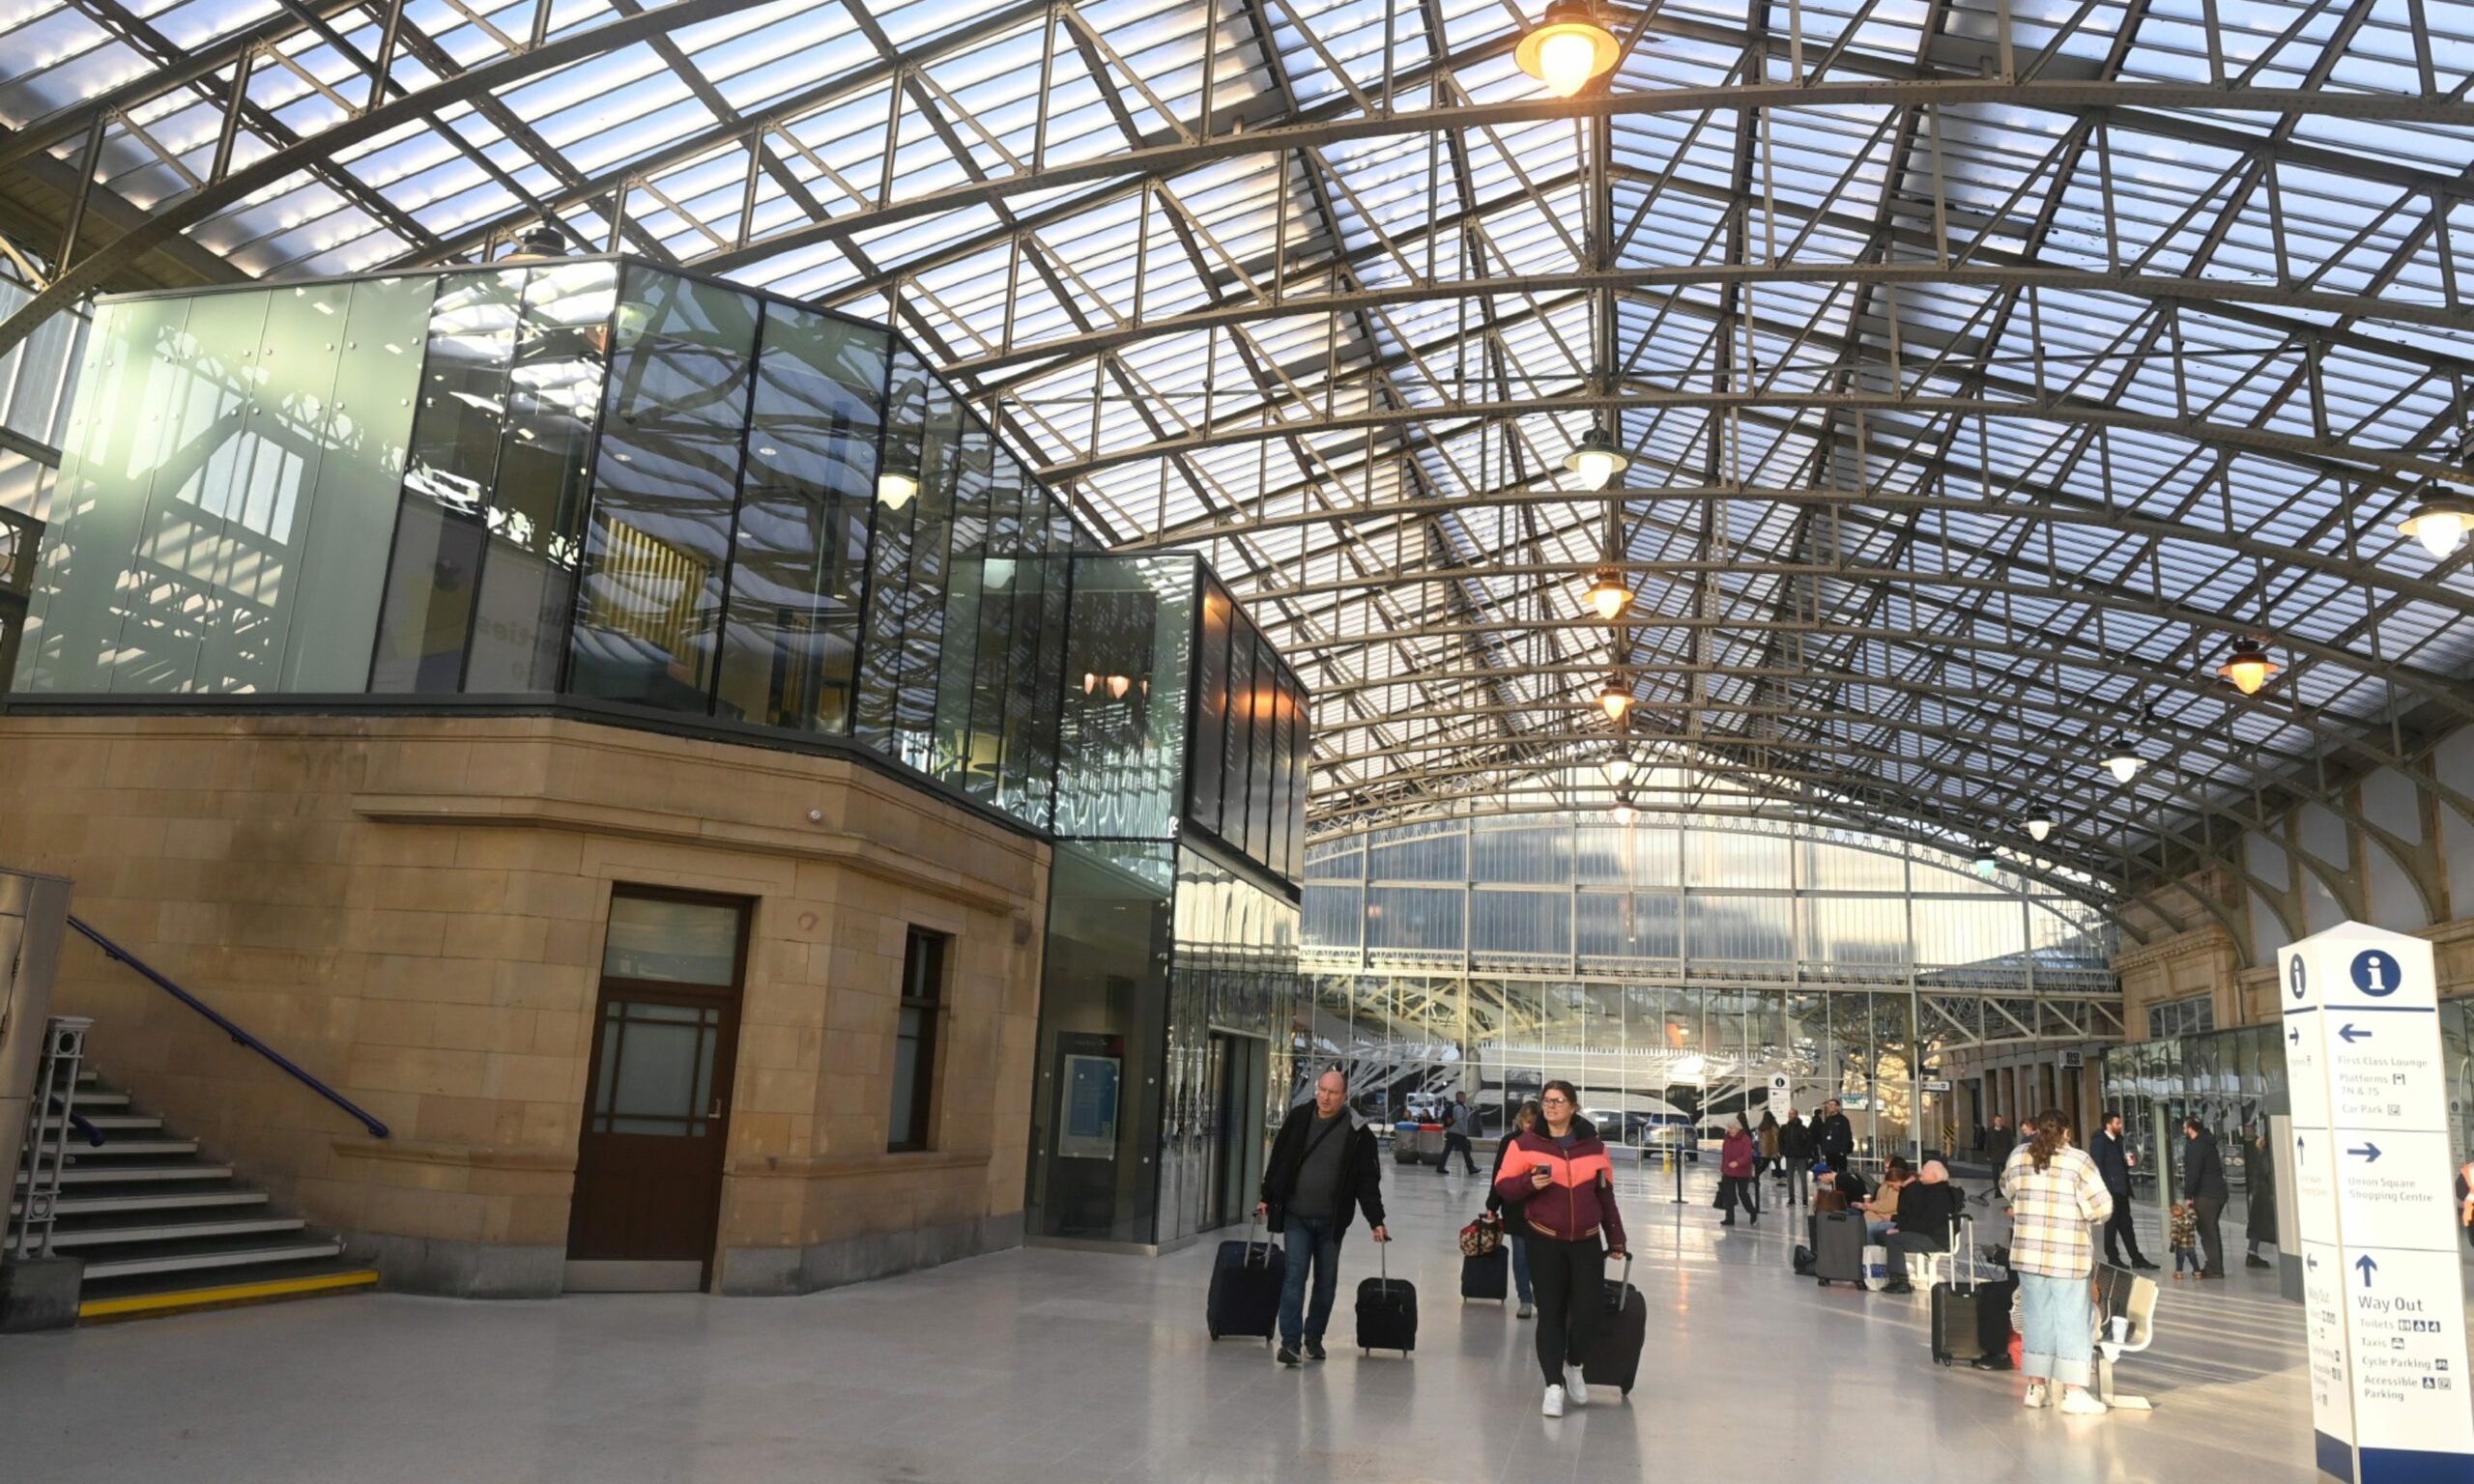 Aberdeen Railway Station underwent an £8m redevelopment.